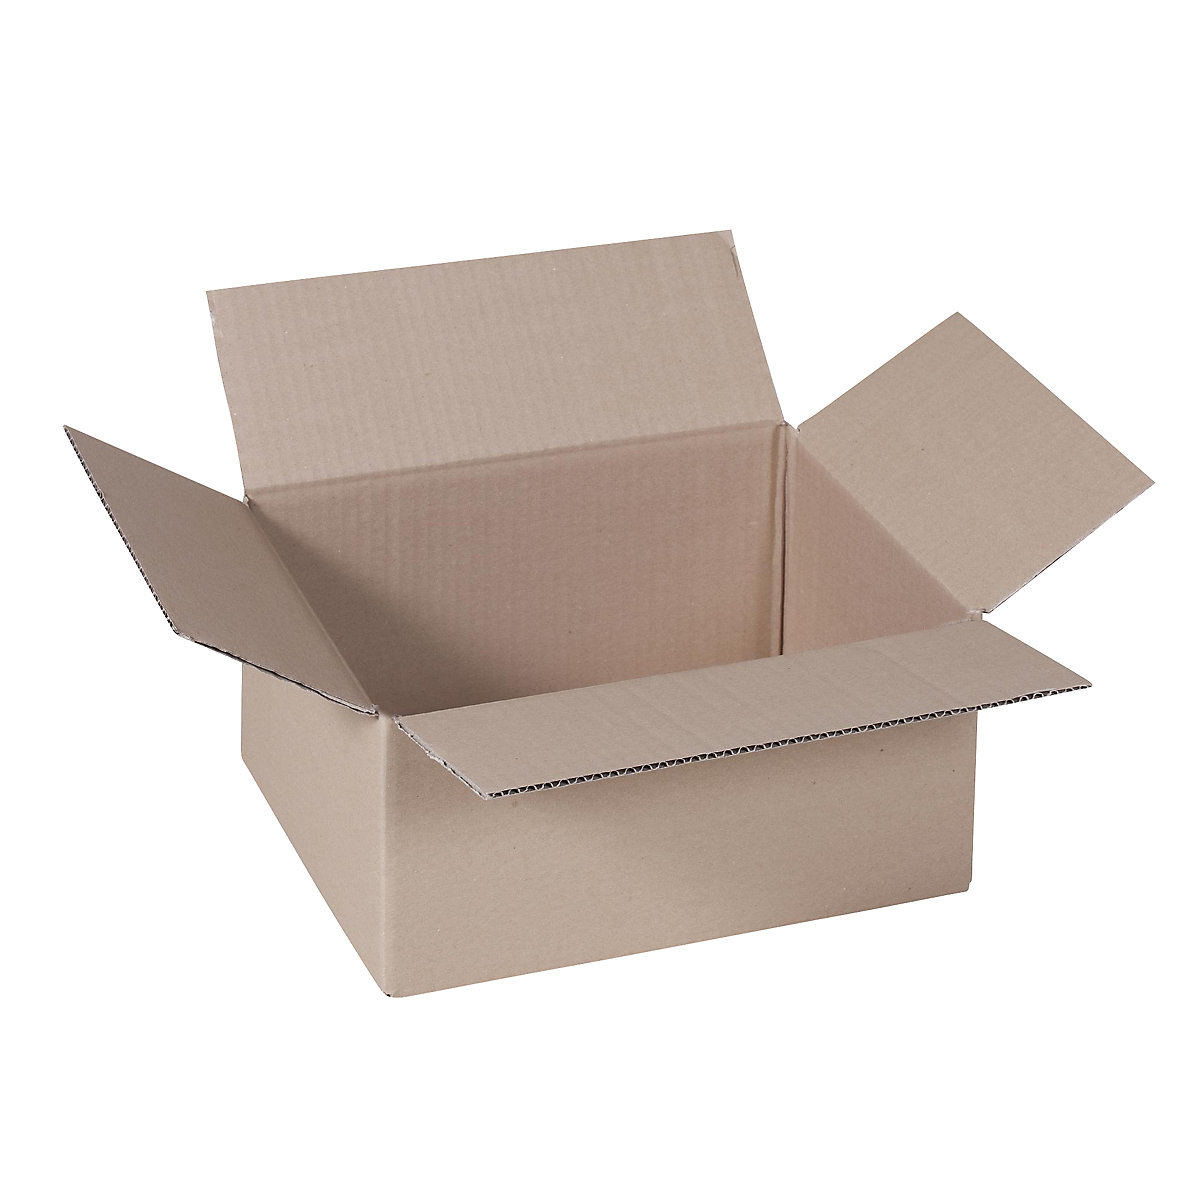 Cutie de carton pliantă, FEFCO 0201, cu 1 strat de carton ondulat, dimensiuni interioare 305 x 215 x 140 mm, amb. 50 buc.-32